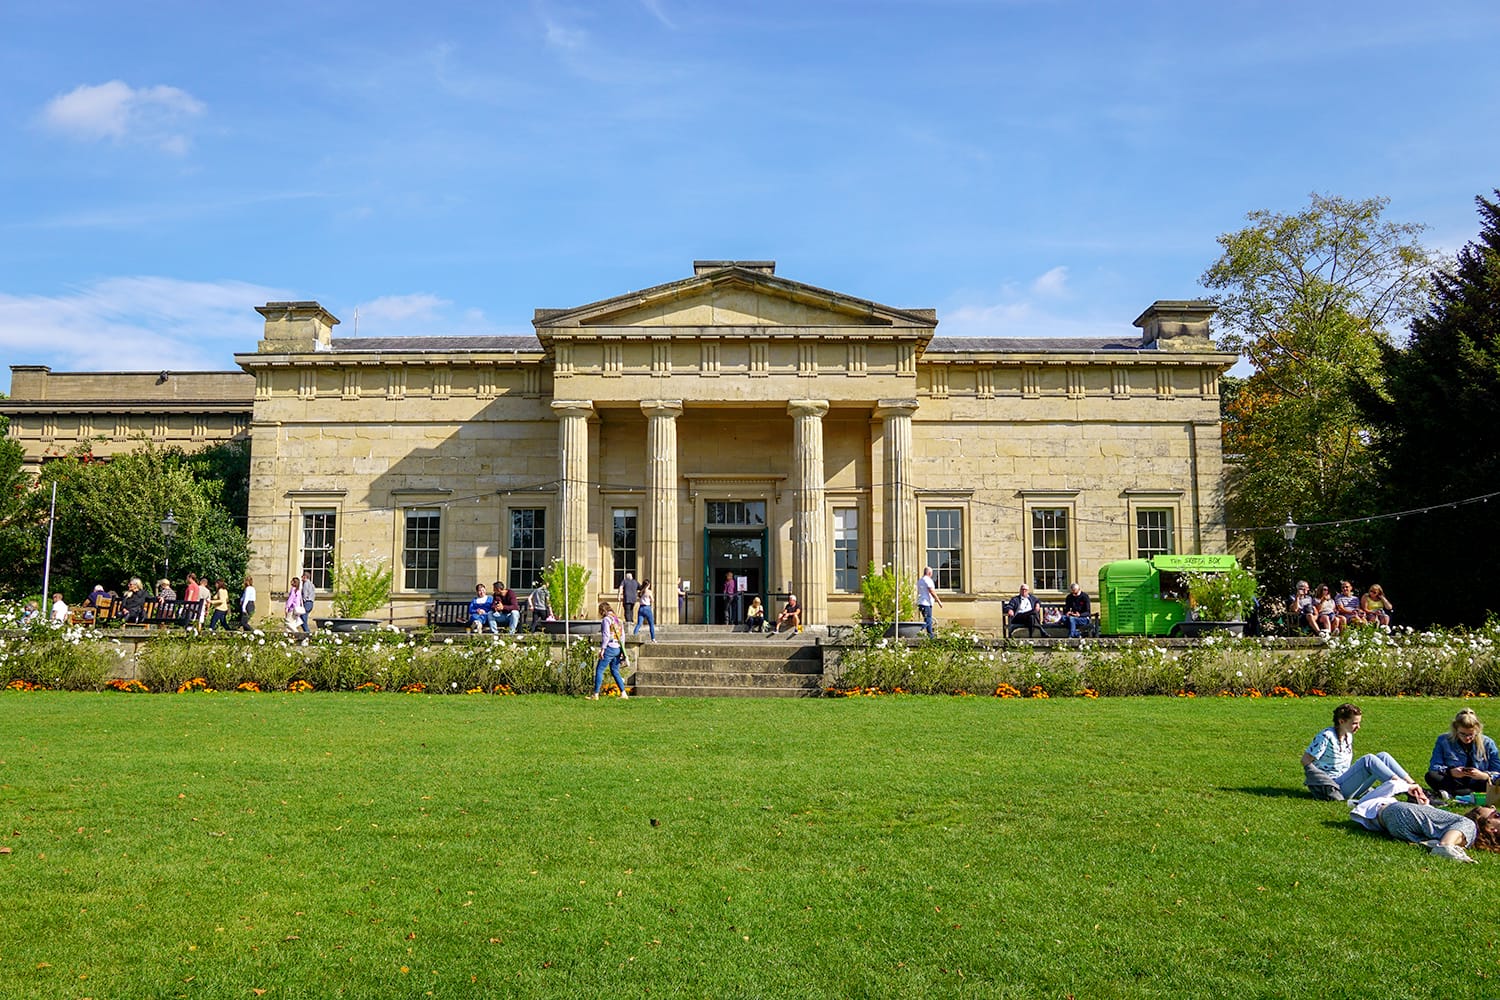 The Yorkshire Museum, Museum Gardens, York, UK